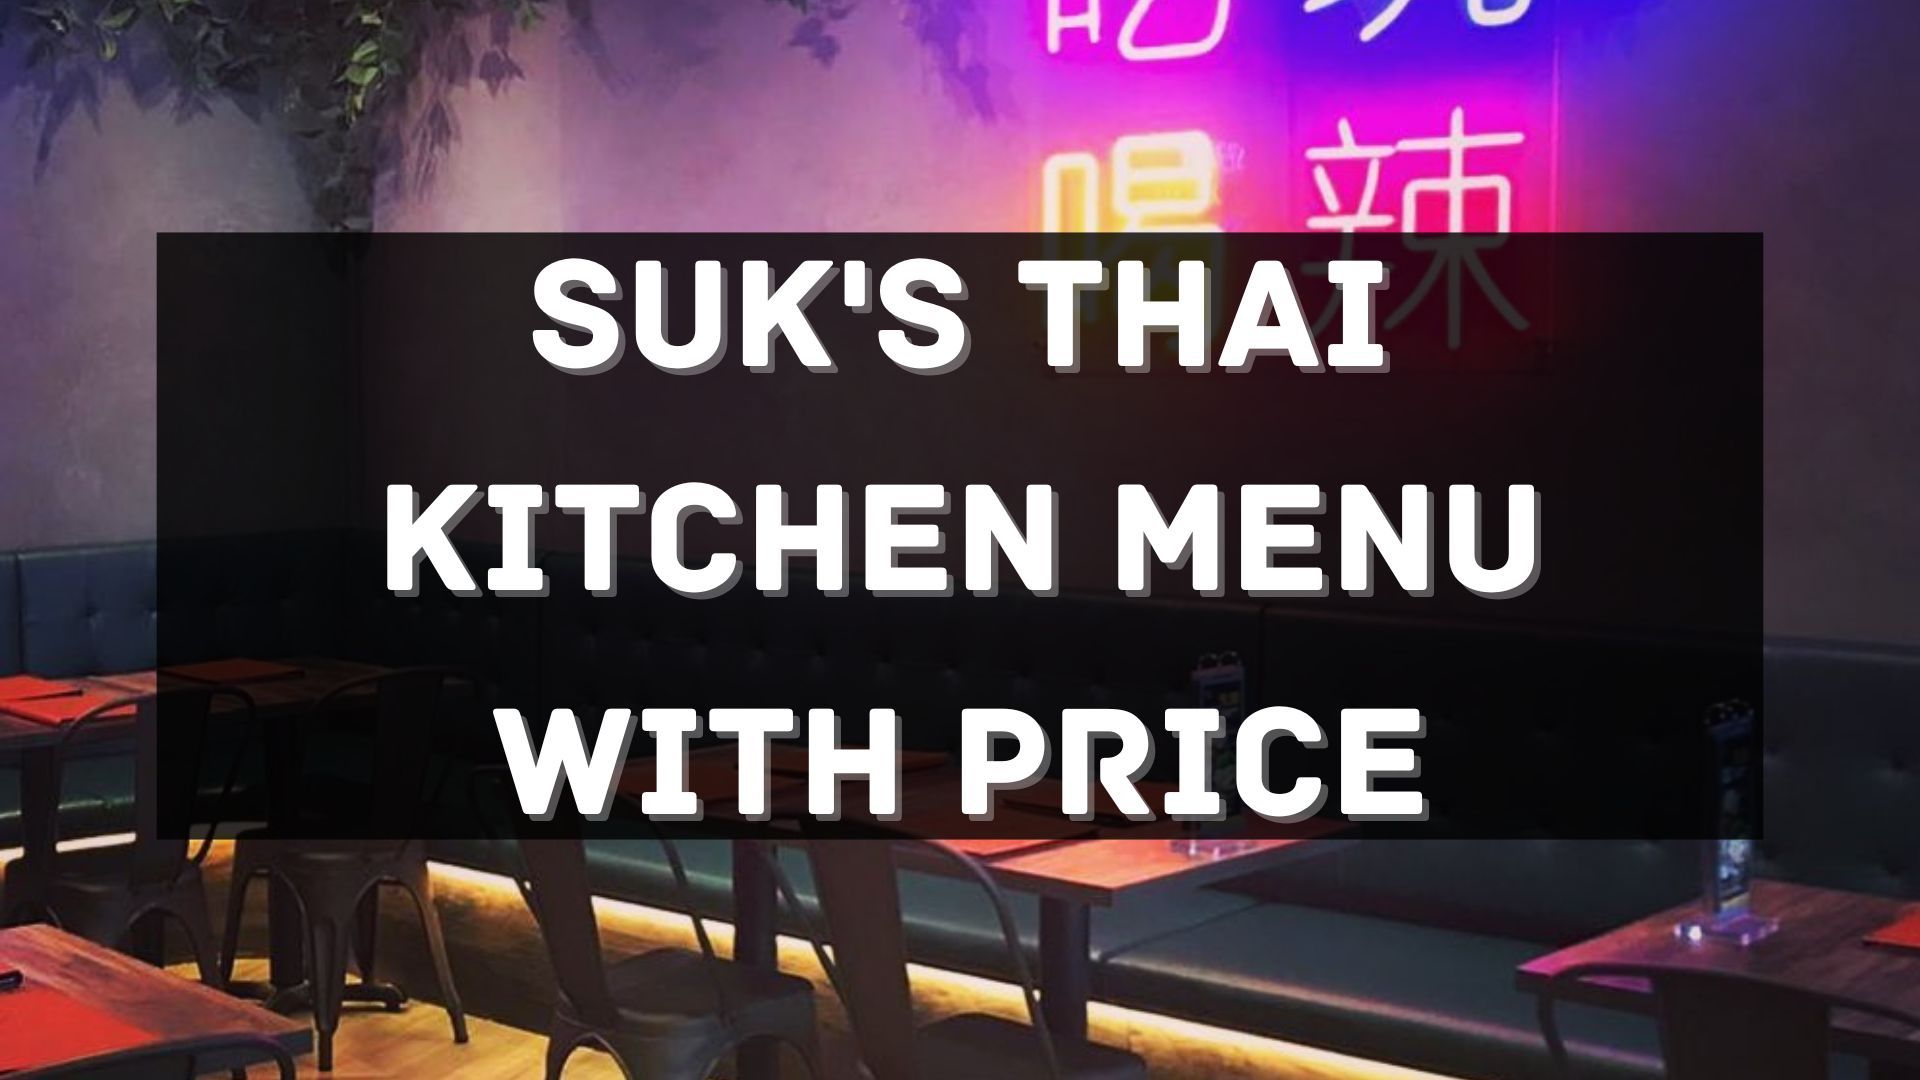 suk's thai menu prices singapore